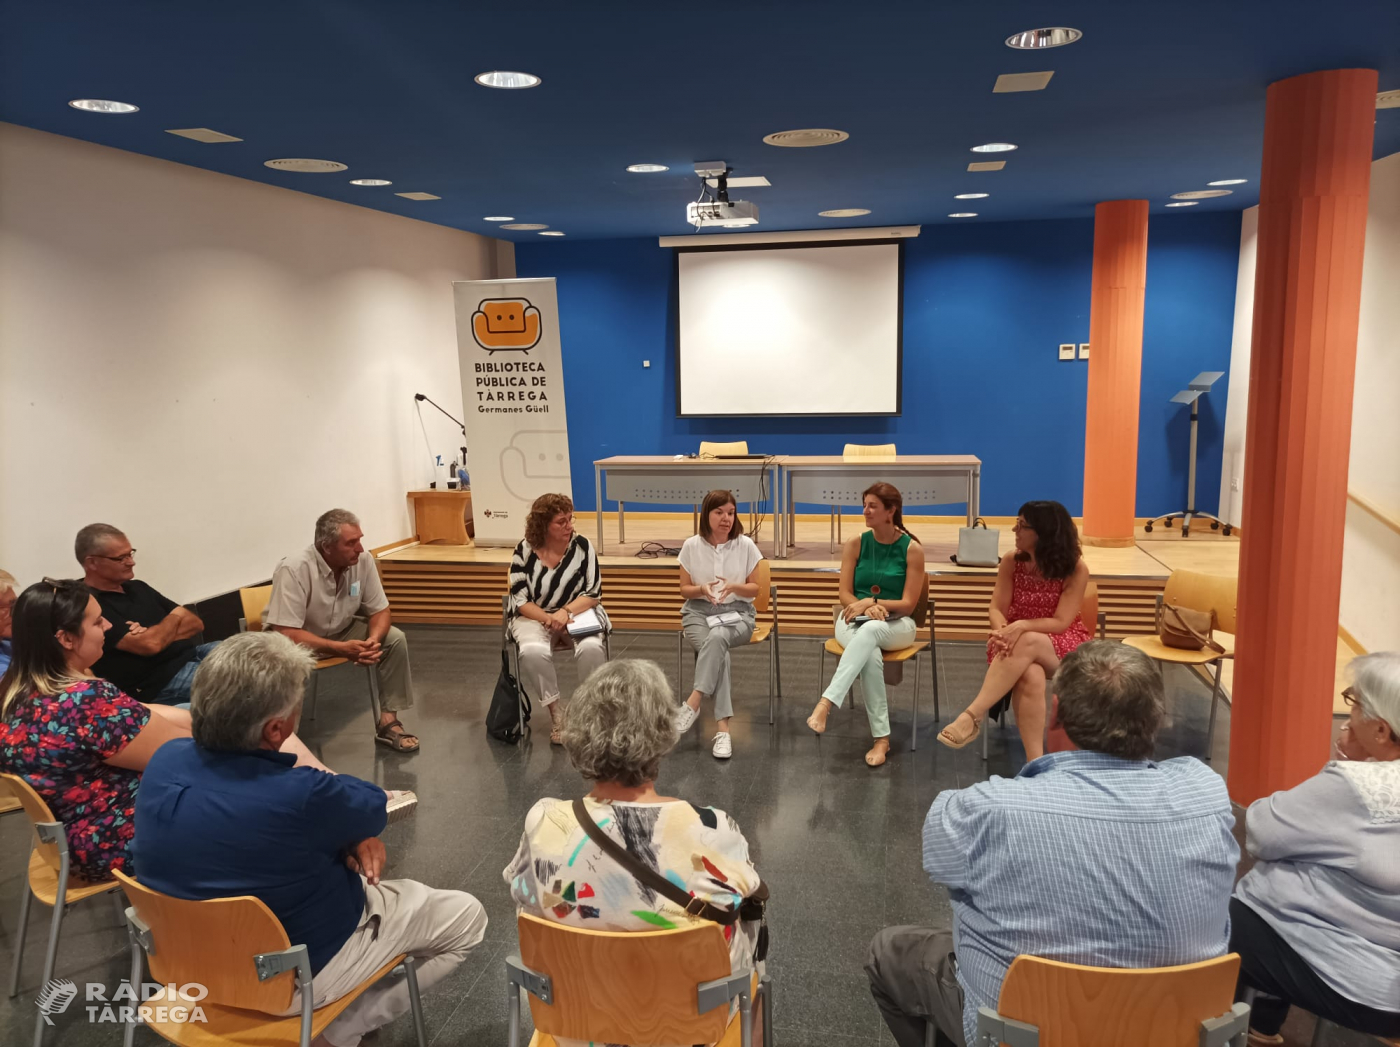 Representants d’Esquerra Republicana de Catalunya es reuneixen amb jutges de pau de la comarca de l’Urgell per debatre sobre la nova llei estatal que pretén suprimir-los